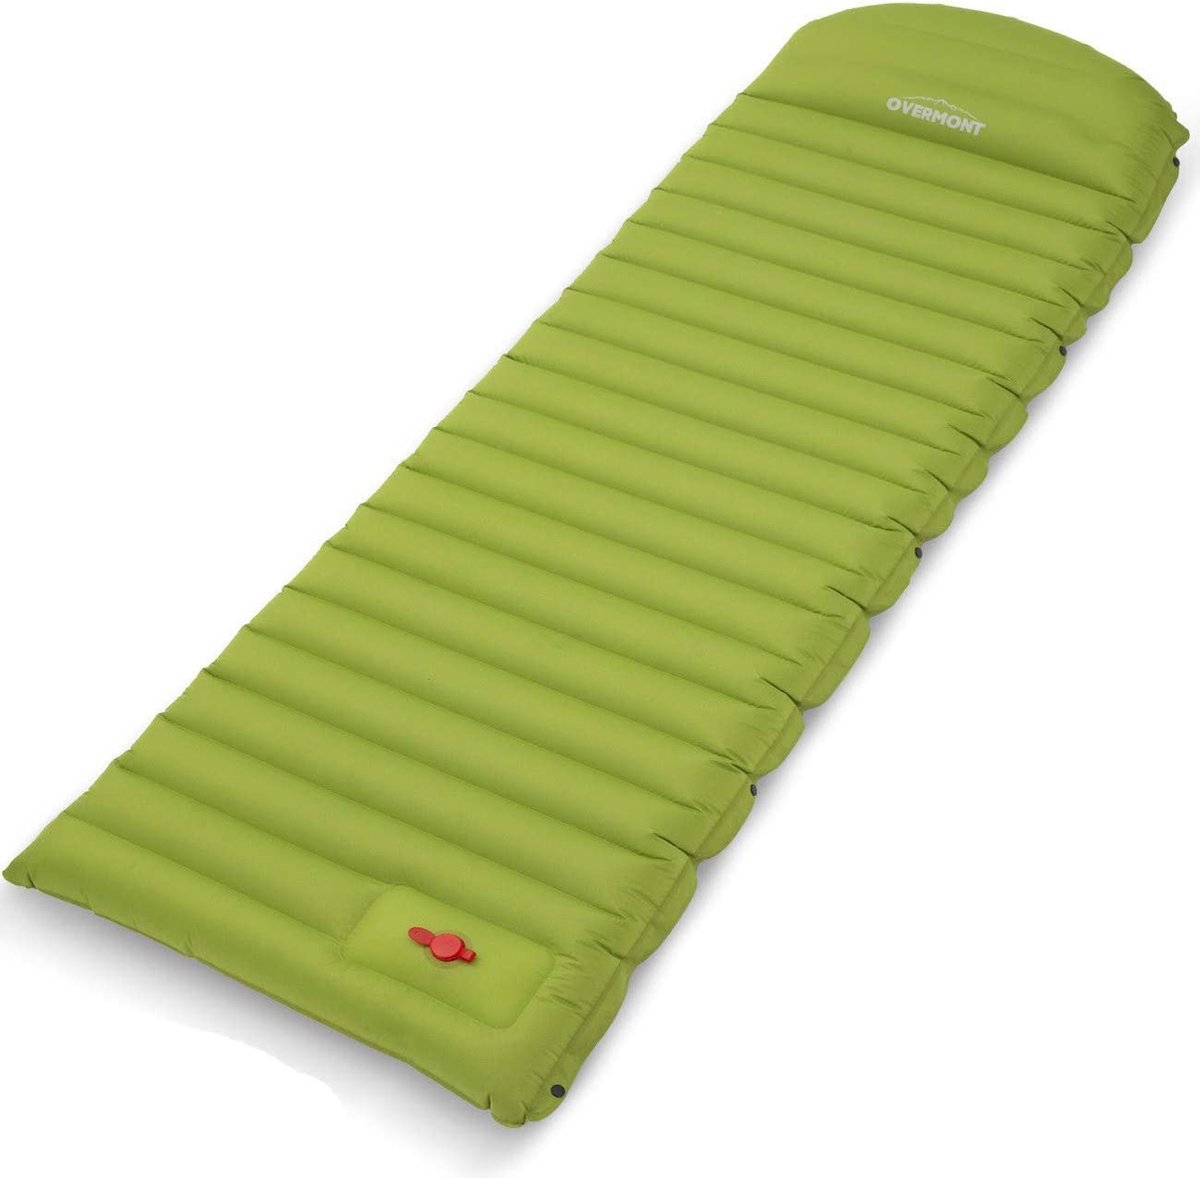 YSR - Camping isomat luchtmatras opblaasbaar 12 cm dik, zelfopblaasbare isomat met ingebouwde luchtpomp en draagtas voor camping wandelingen backpacking reizen tent strand donkerblauw/groen